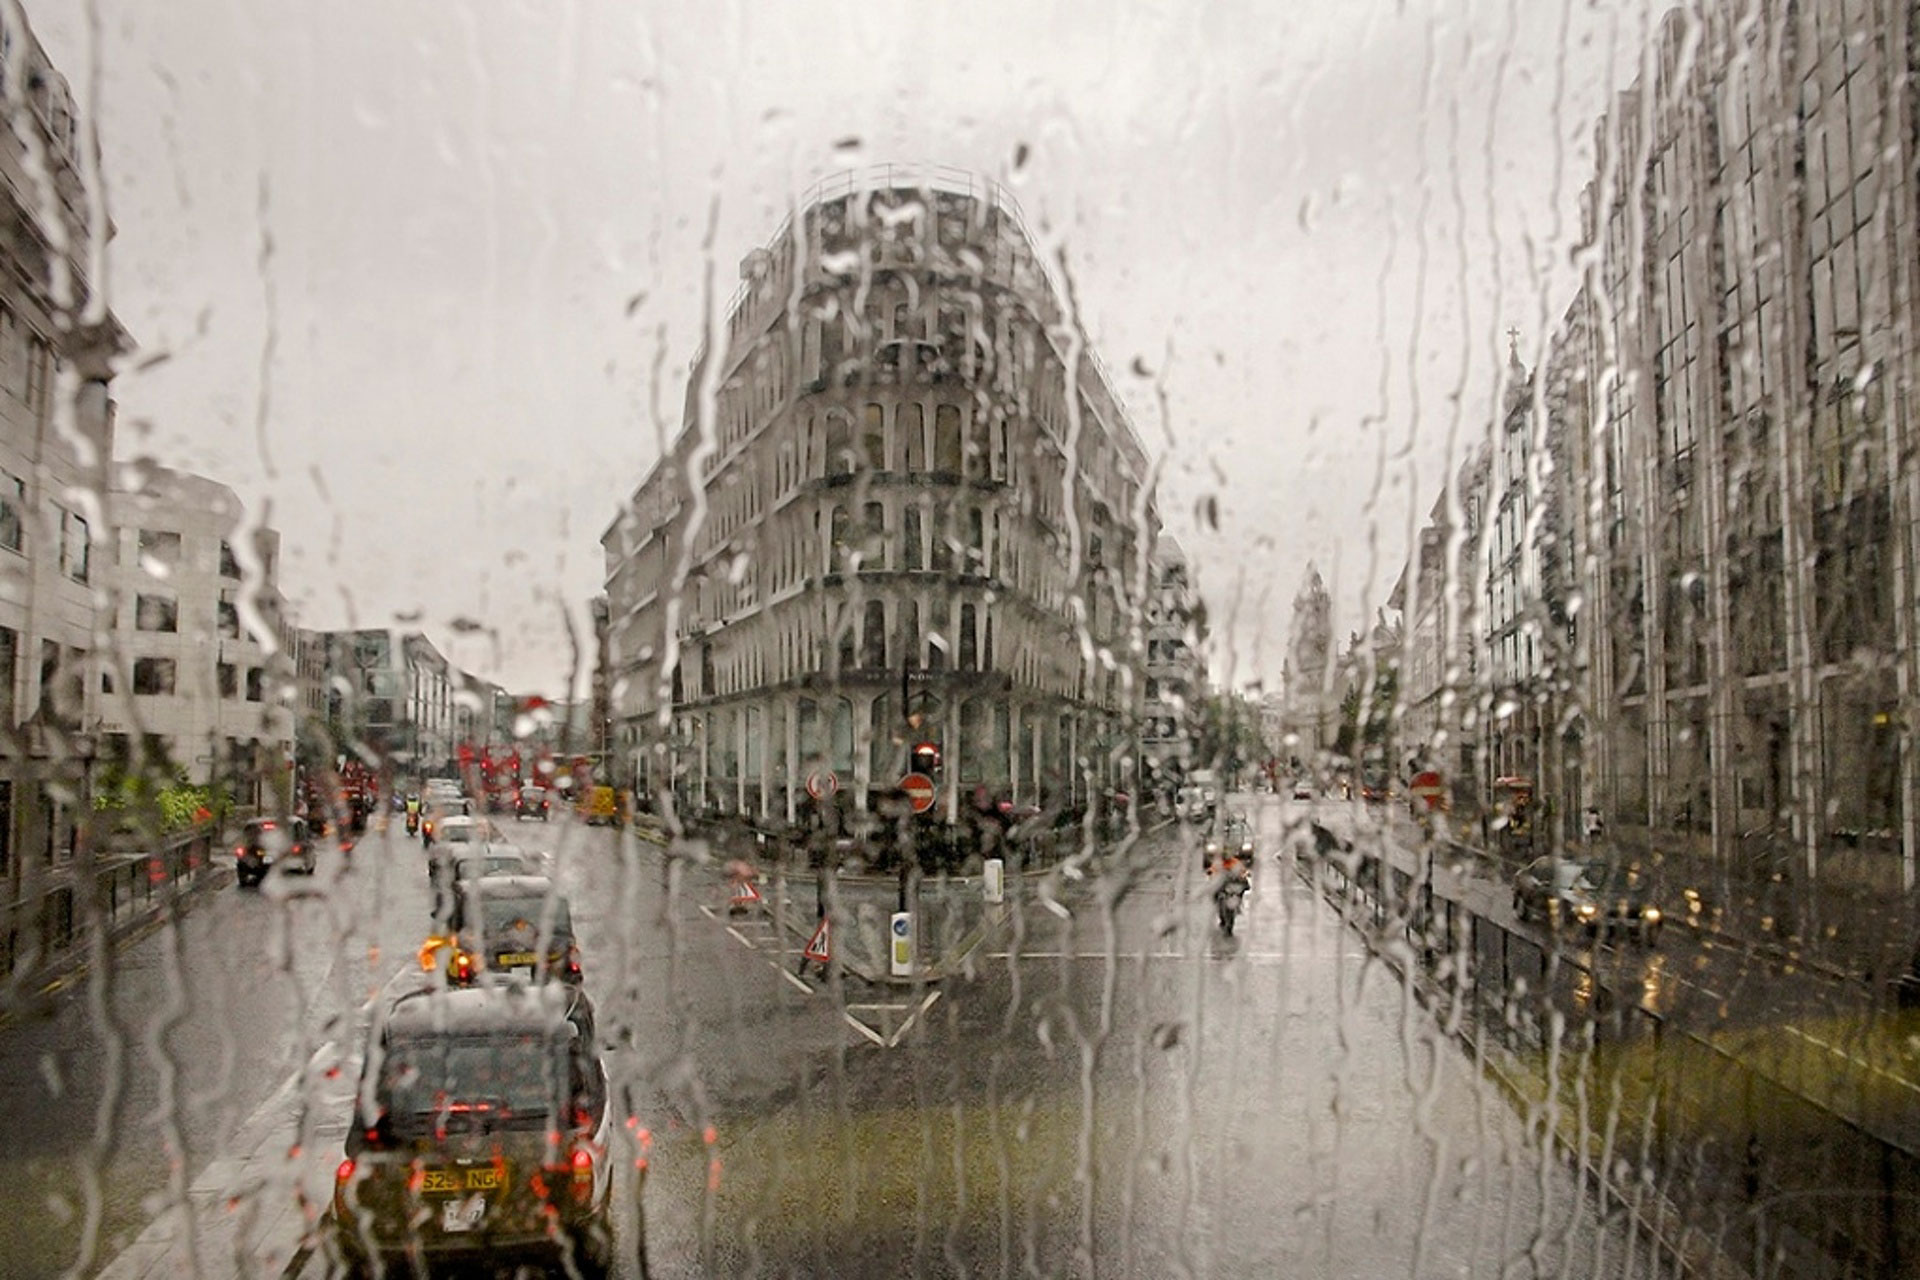 عکس های جرج جورجیو از لندن از درون اتوبوس دوطبقه